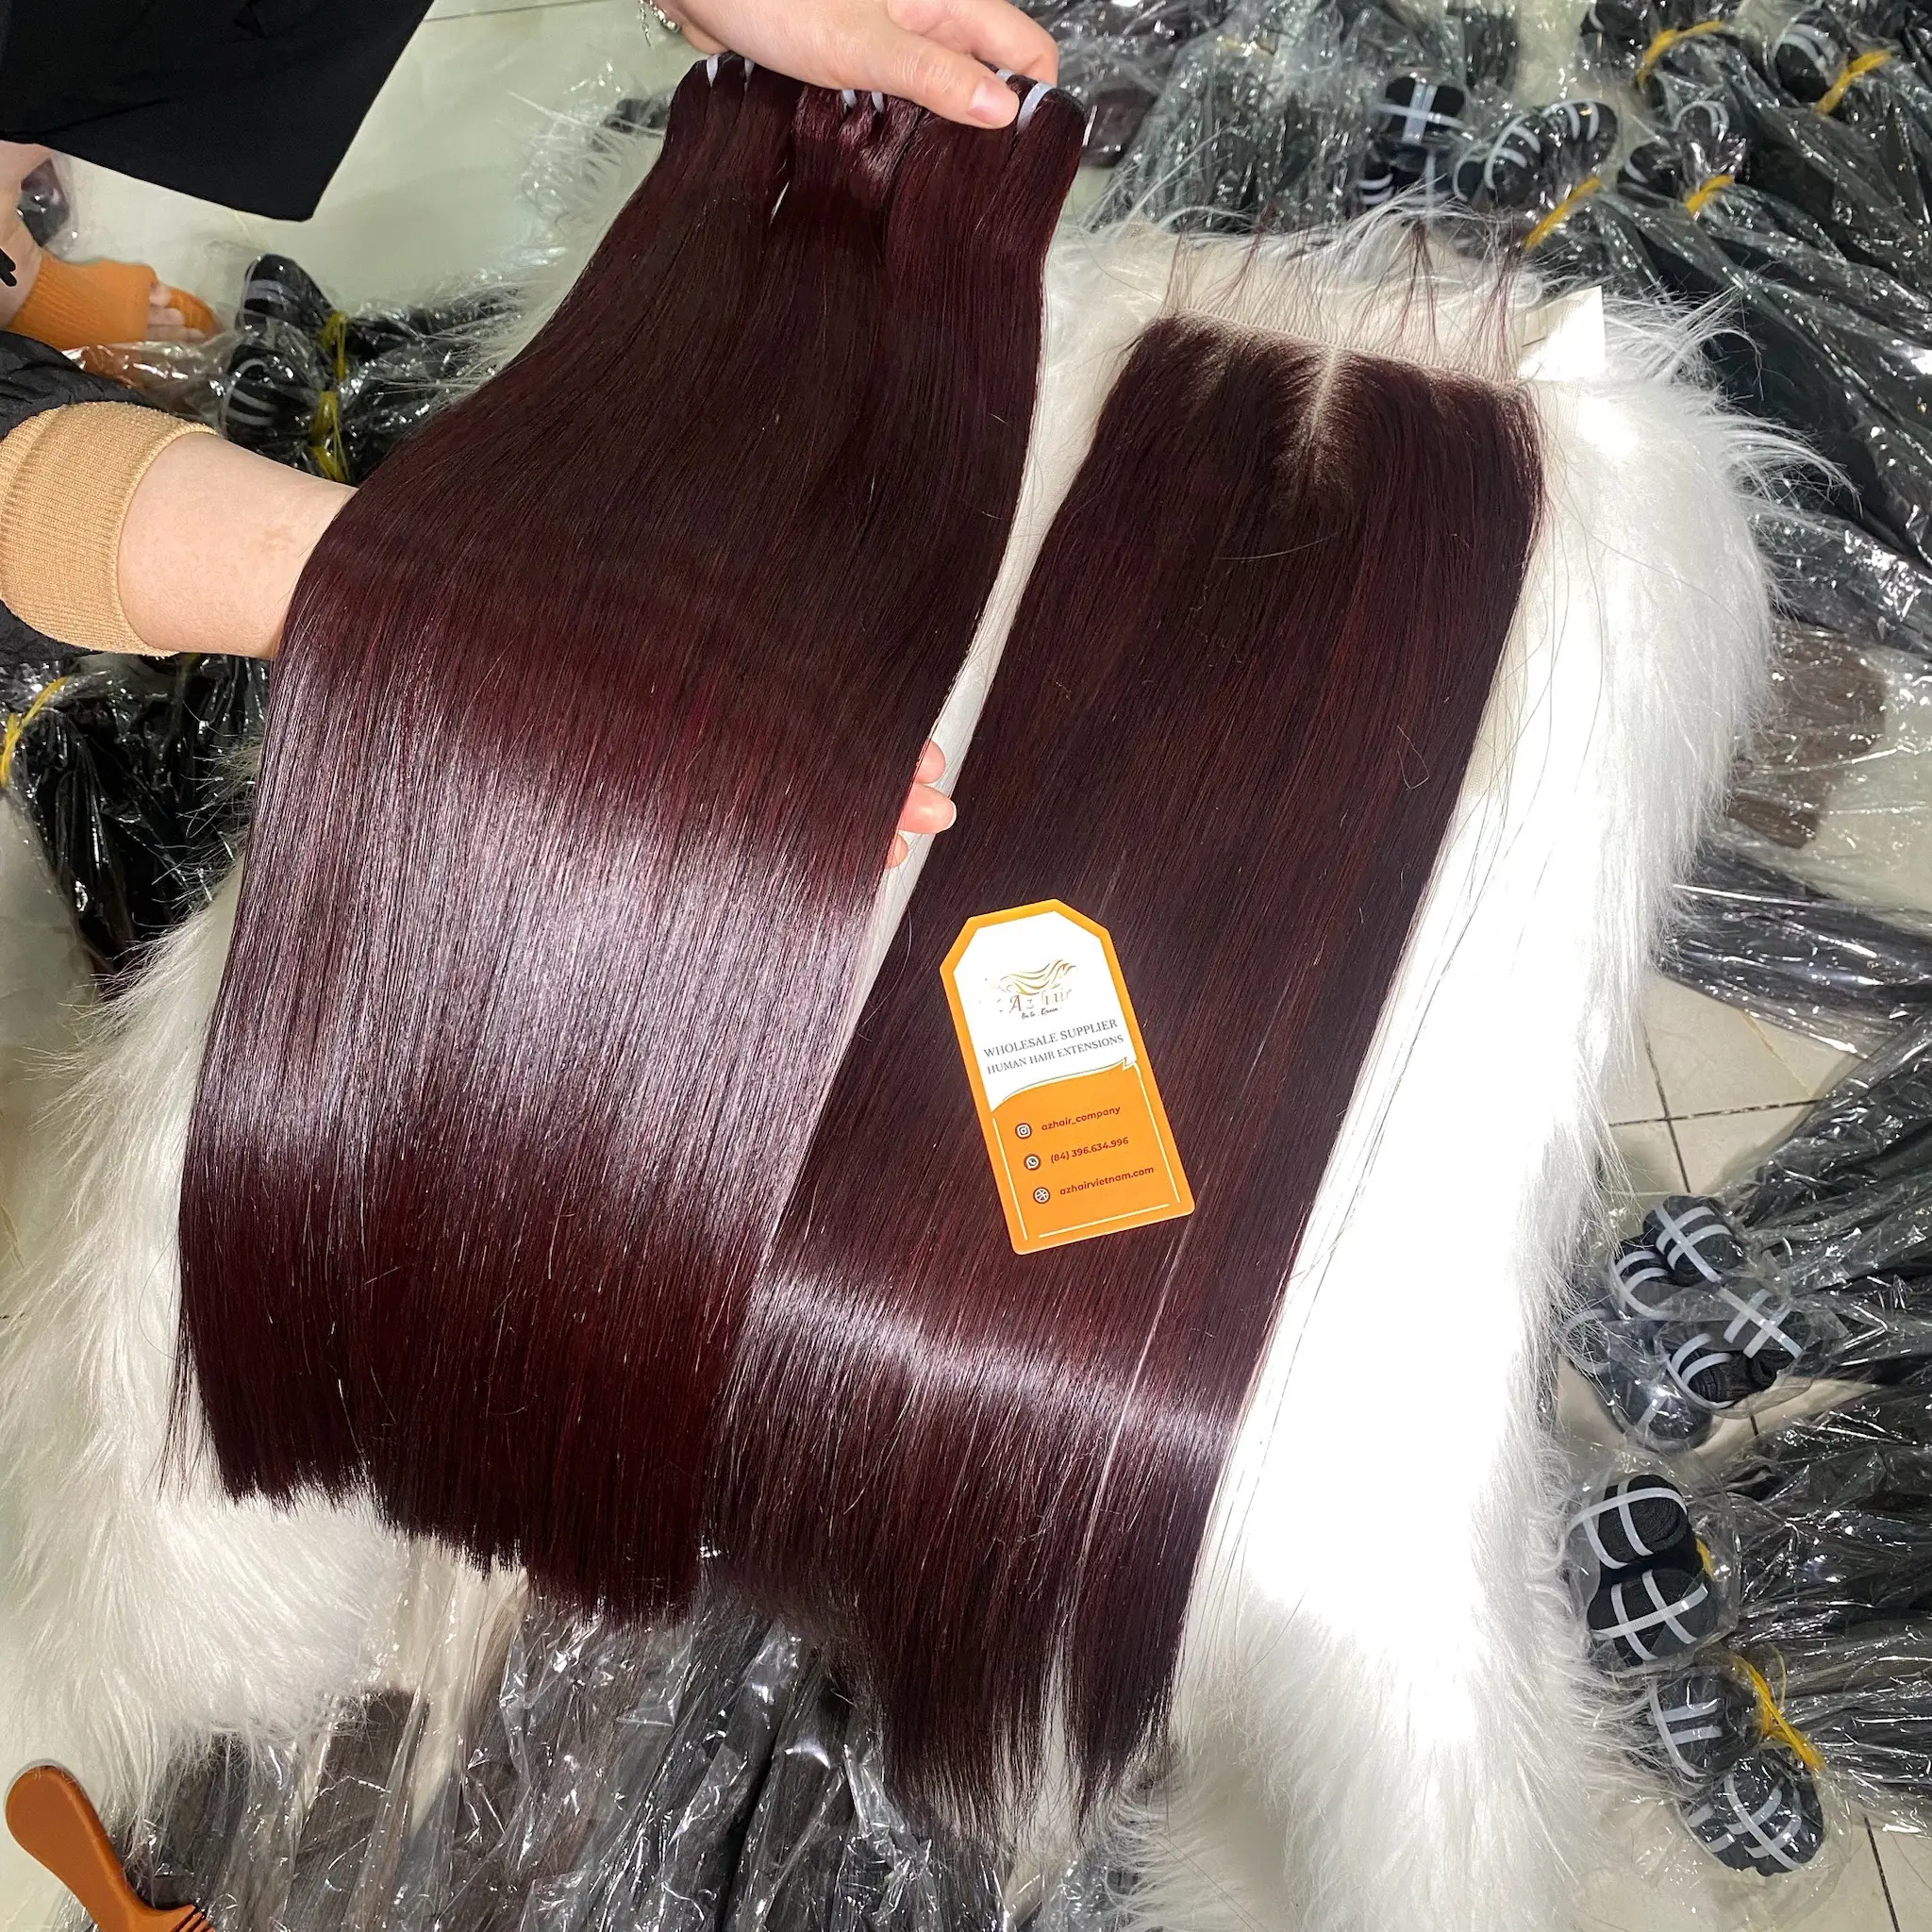 सुपर डबल ड्रा वियतनामी मानव बाल एक्सटेंशन हड्डी सीधे बंडल बरगंडी बाल रंग क्लोजर के साथ कच्चे वियतनामी